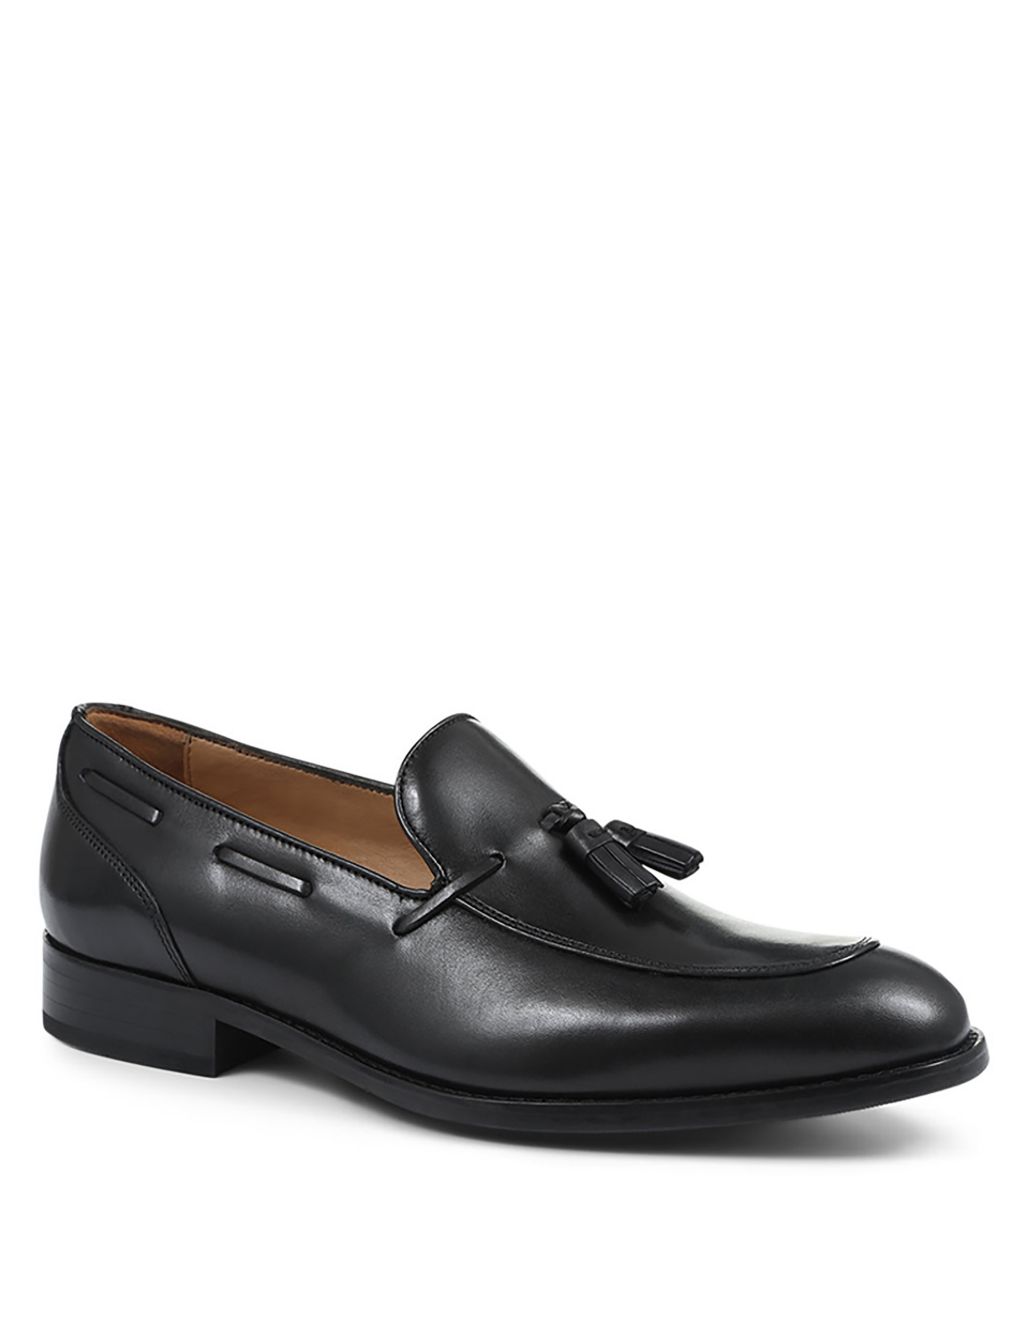 Leather Tassel Slip-On Loafers image 2